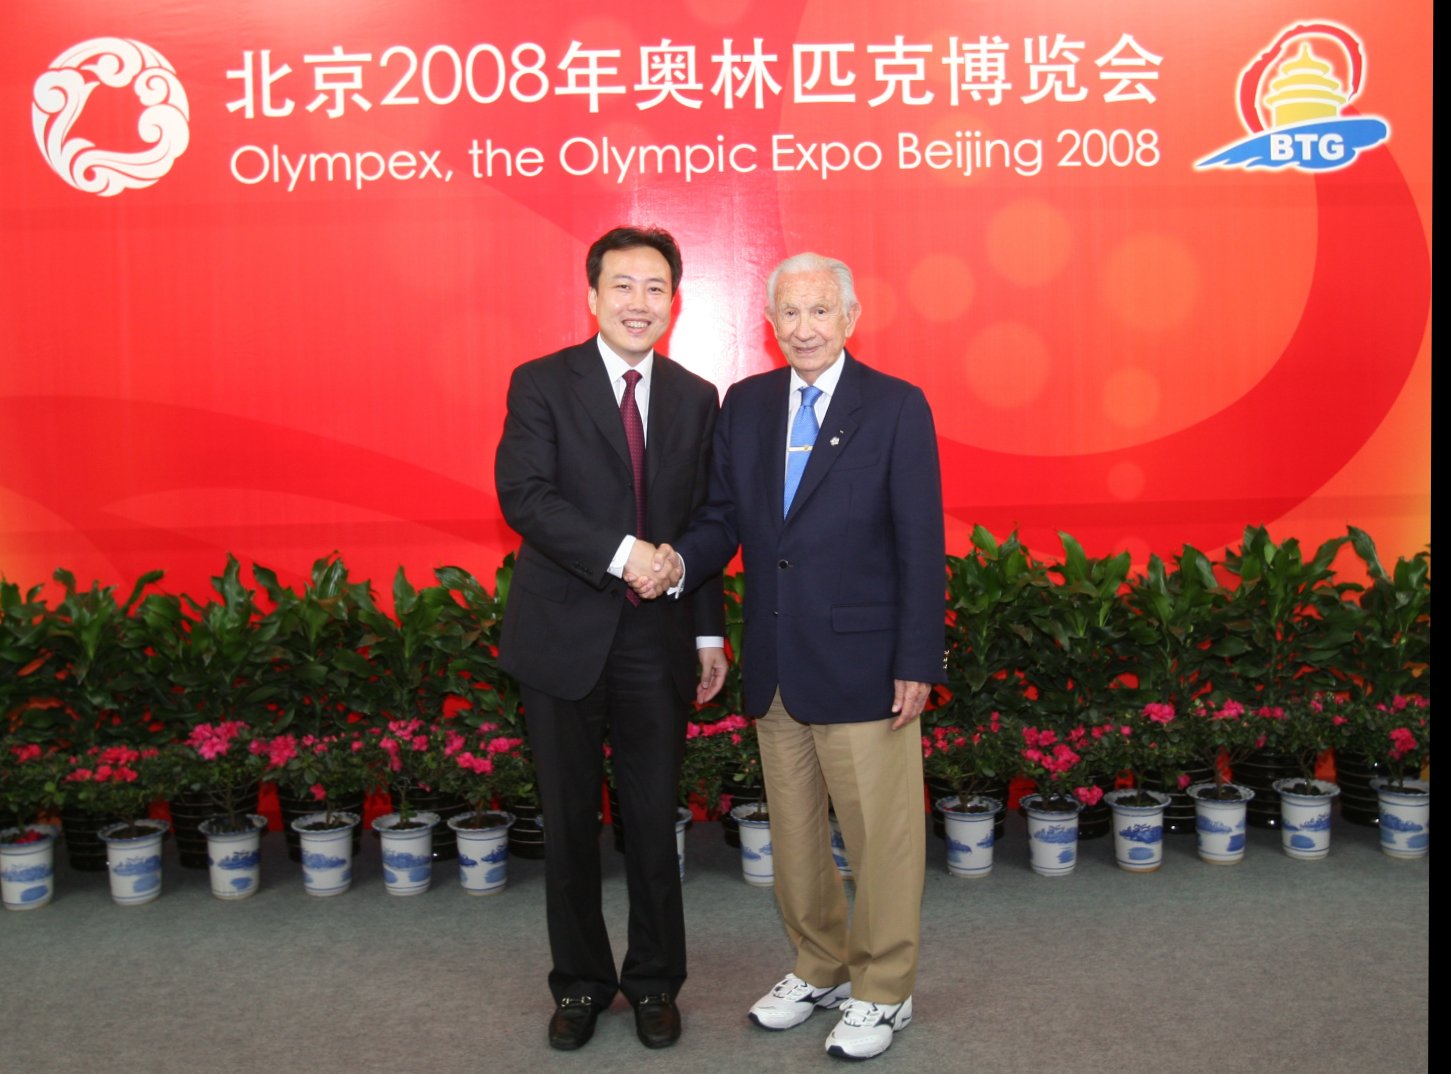 2008年8月，樸學東在北京展覽館奧林匹克博覽會現場與薩馬蘭奇合照。受訪者供圖